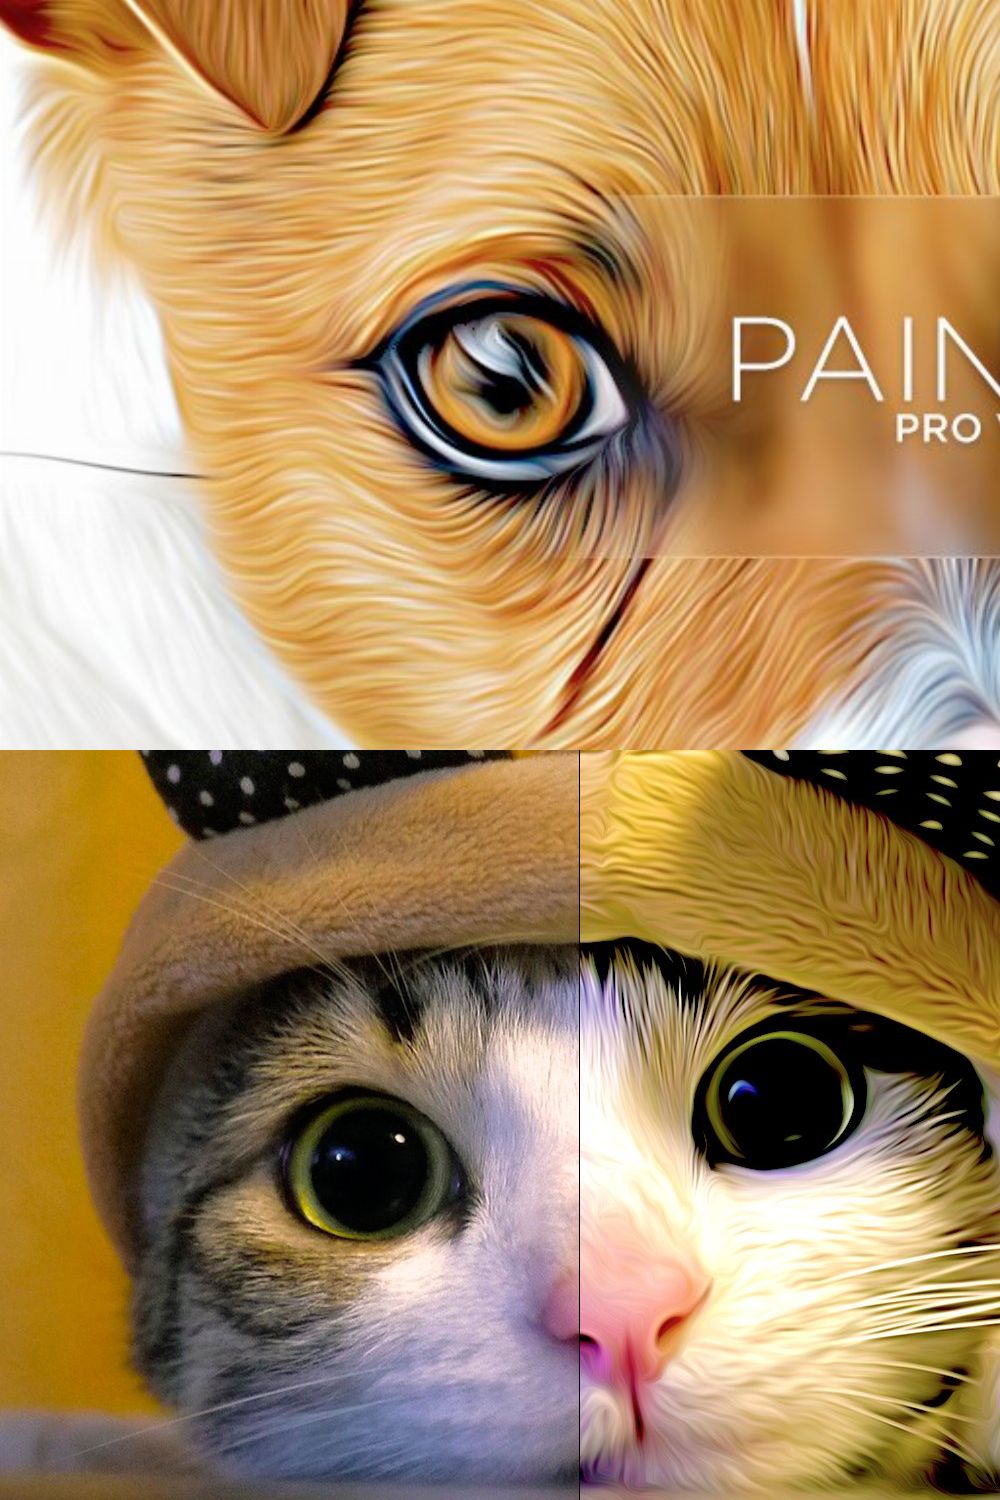 Paint Pro pinterest preview image.